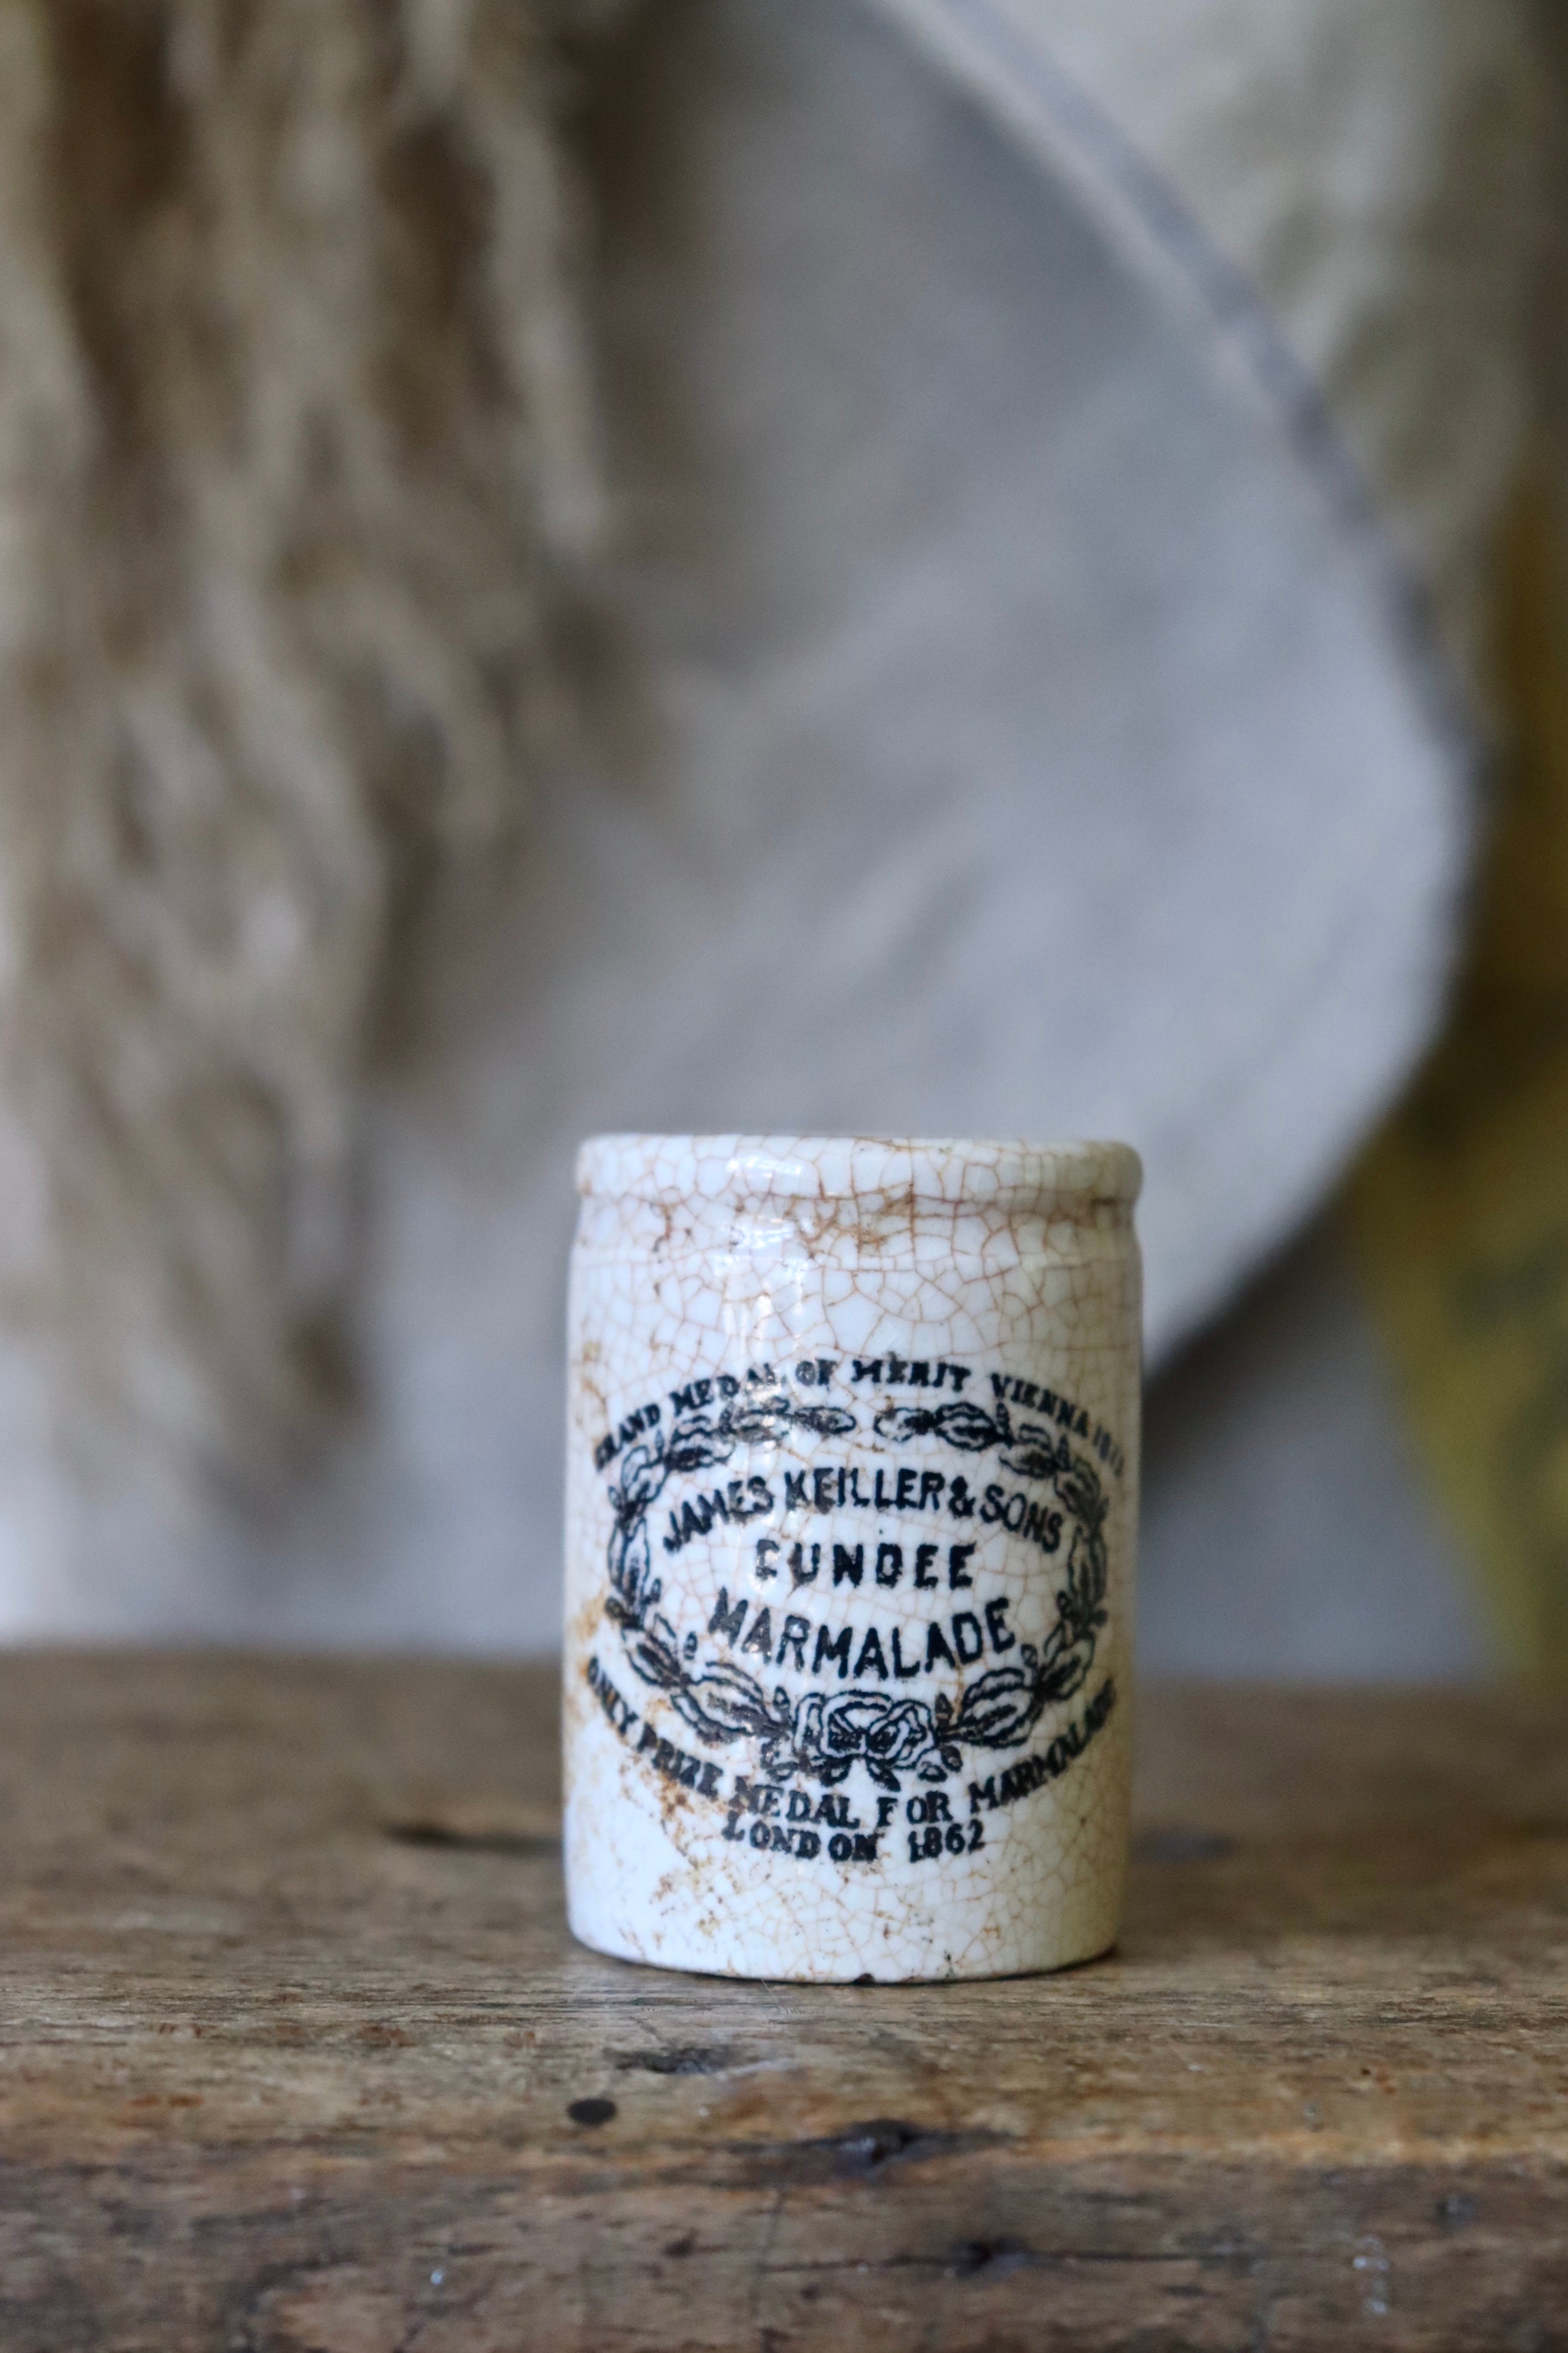 Miniature Dundee James Keiller & Son's Marmalade Jar